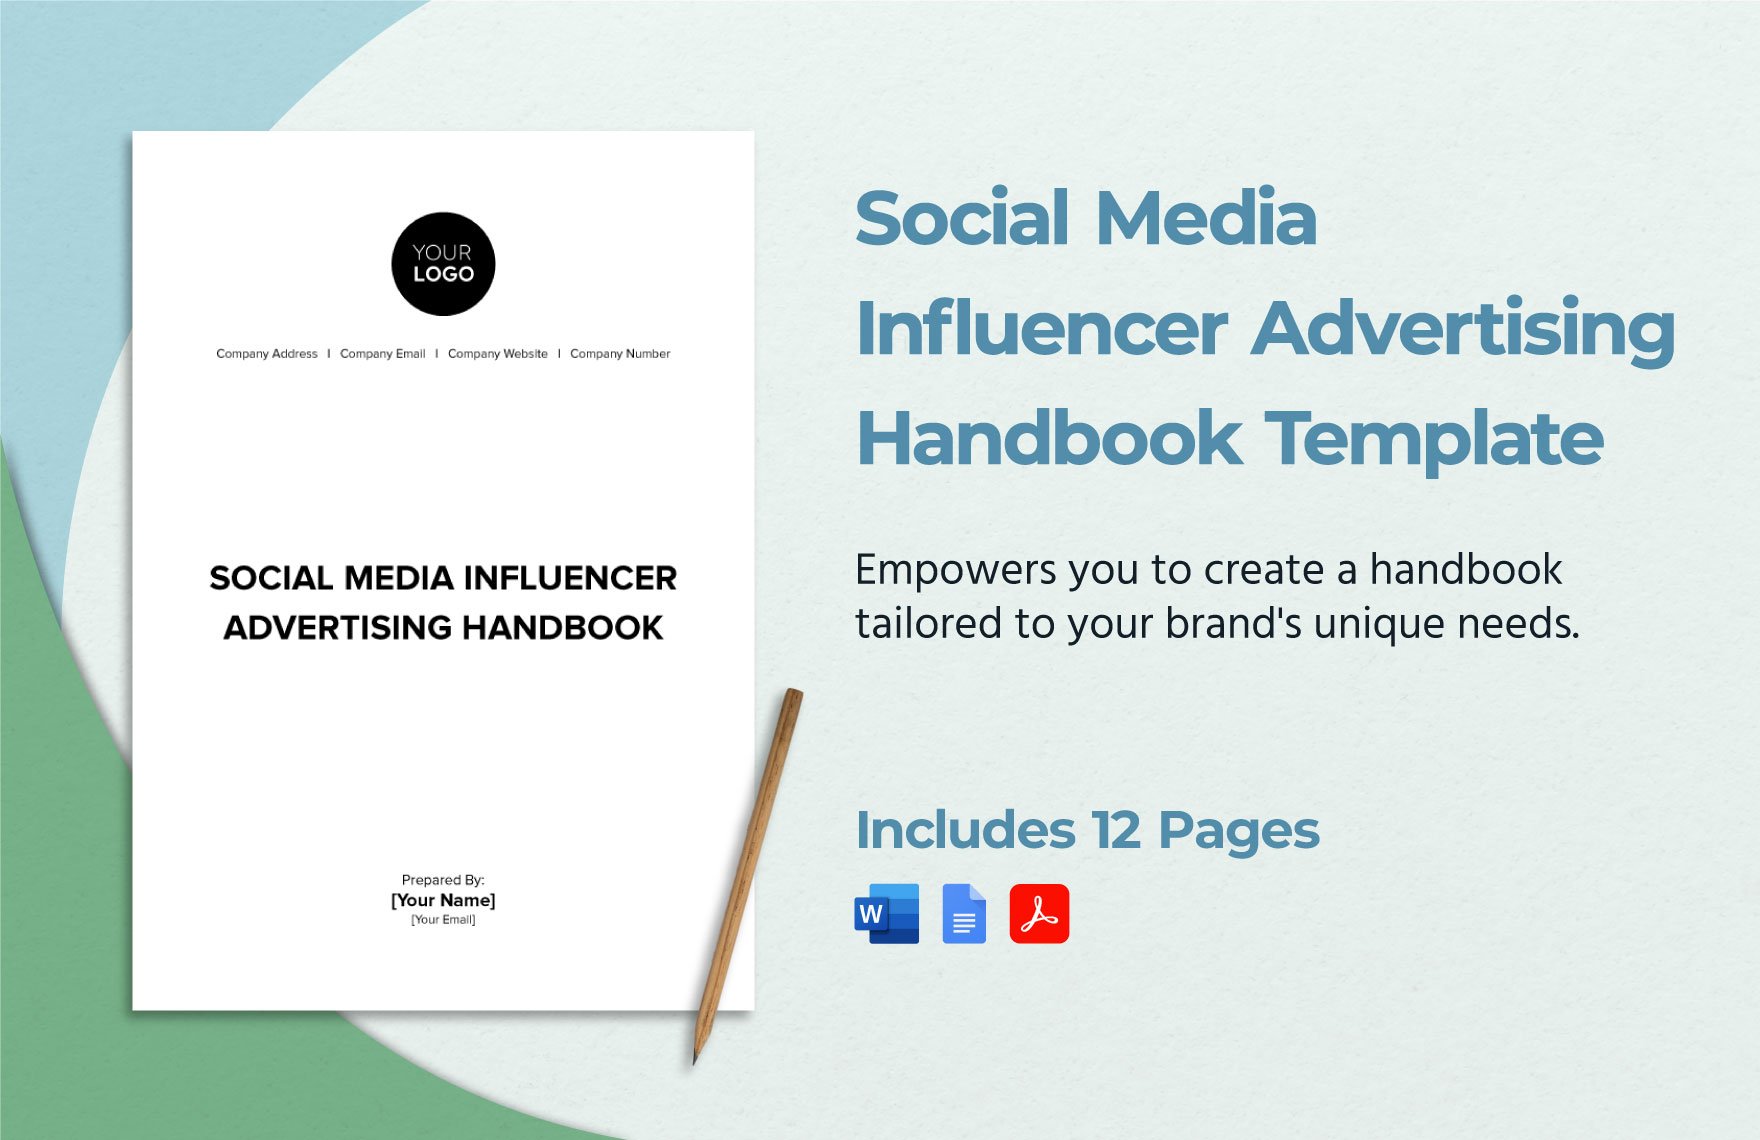 Social Media Influencer Advertising Handbook Template in Word, Google Docs, PDF